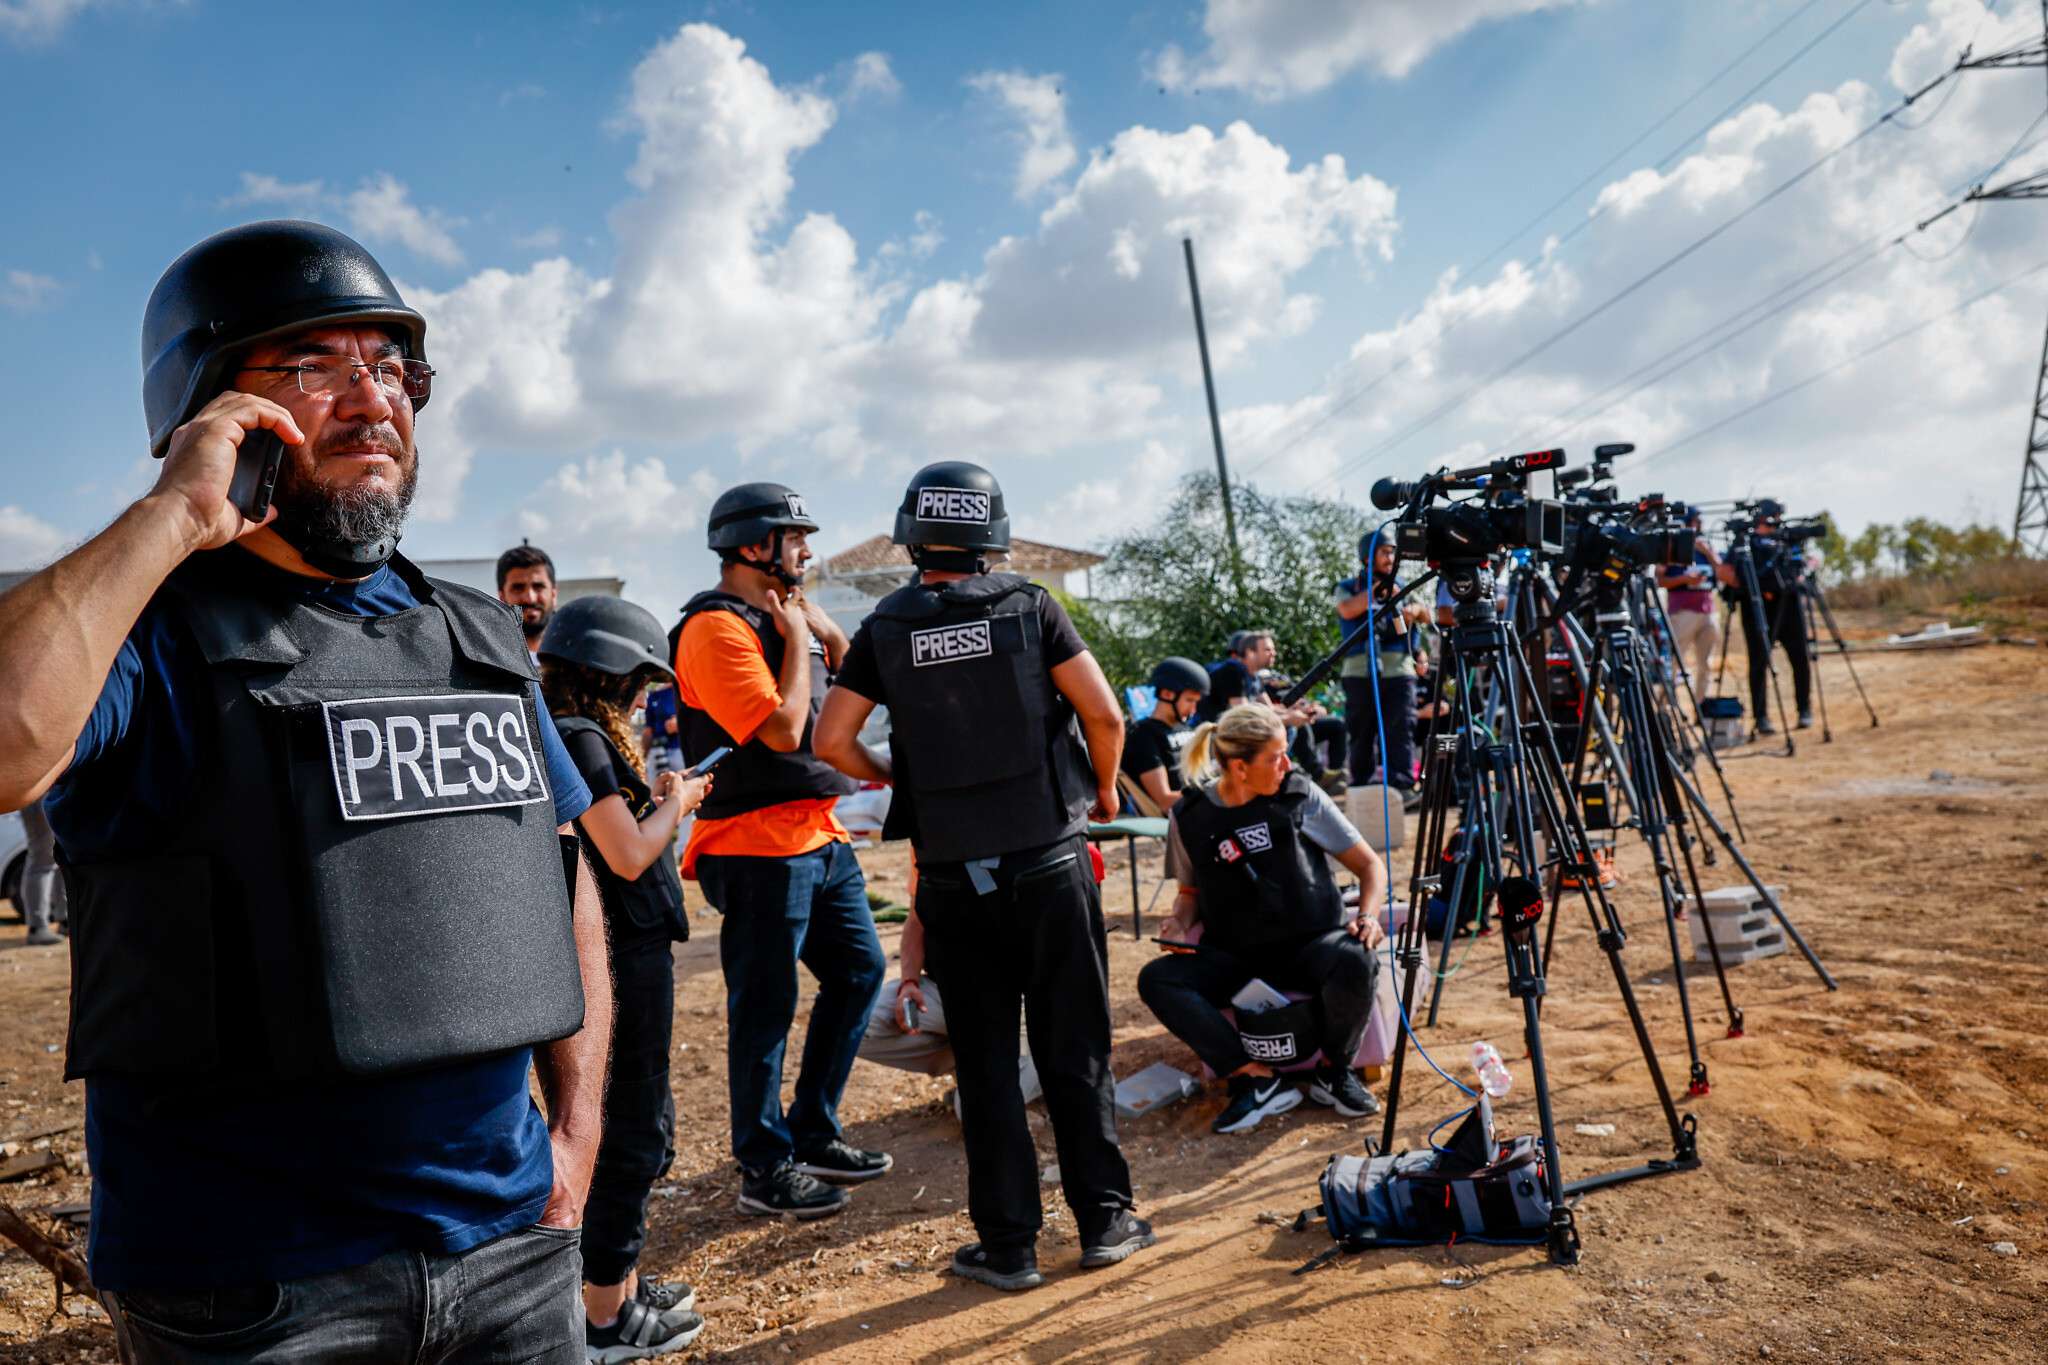 Գազայի հատվածում պատերազմի մեկնարկից ի վեր սպանված լրագրողների թիվը հատել է 100-ը